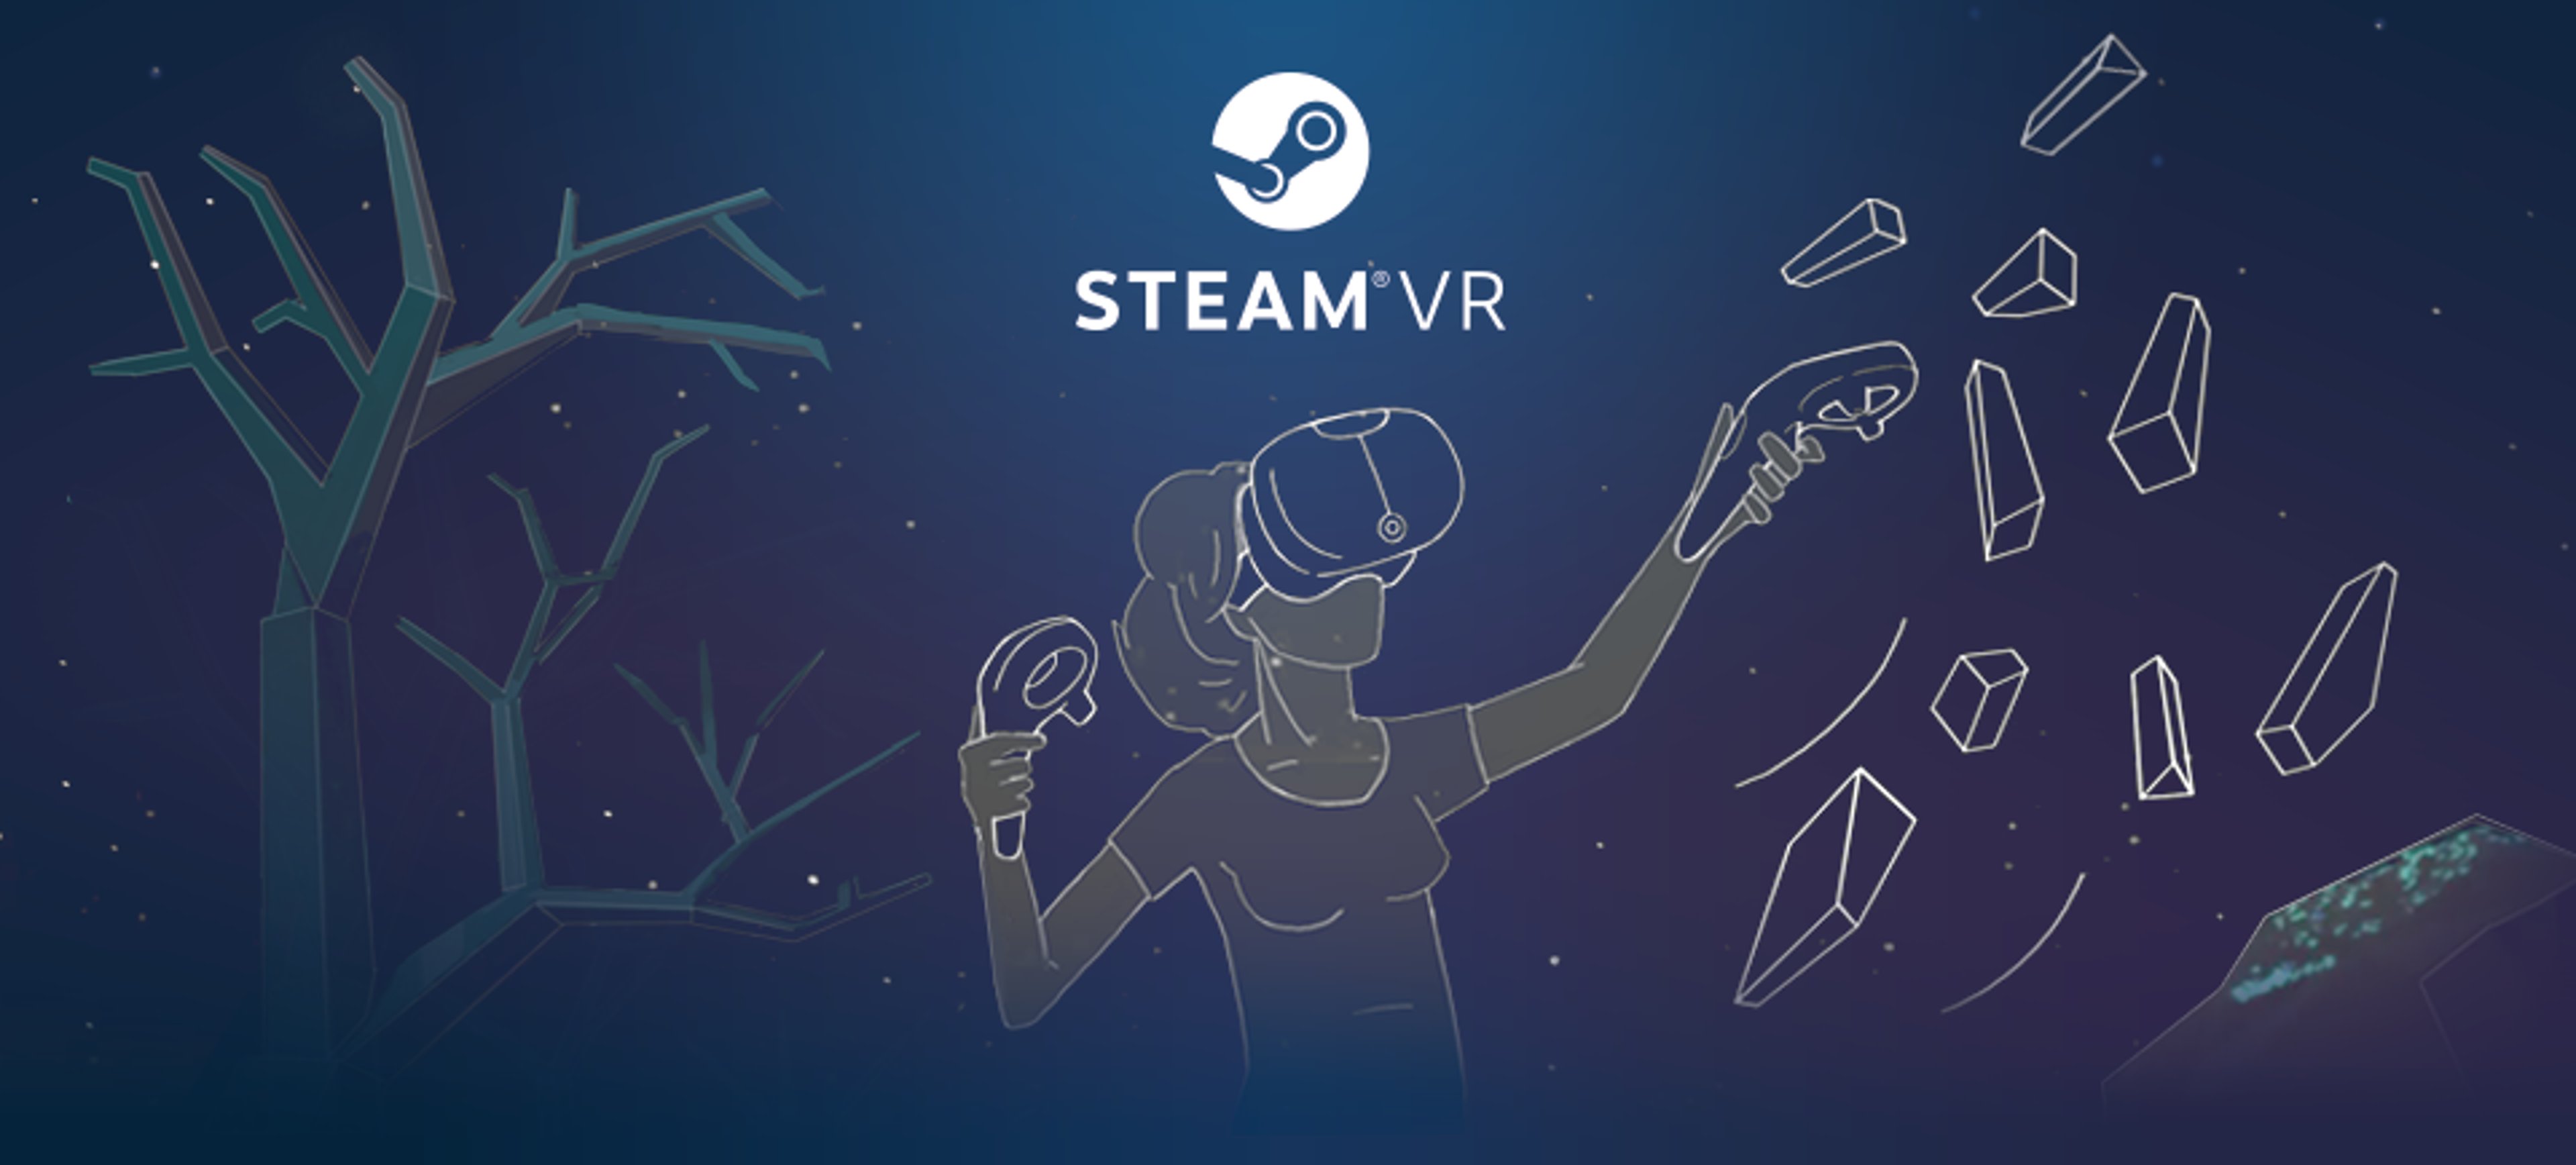 Saldi Steam VR primaverili : Vediamo il meglio!